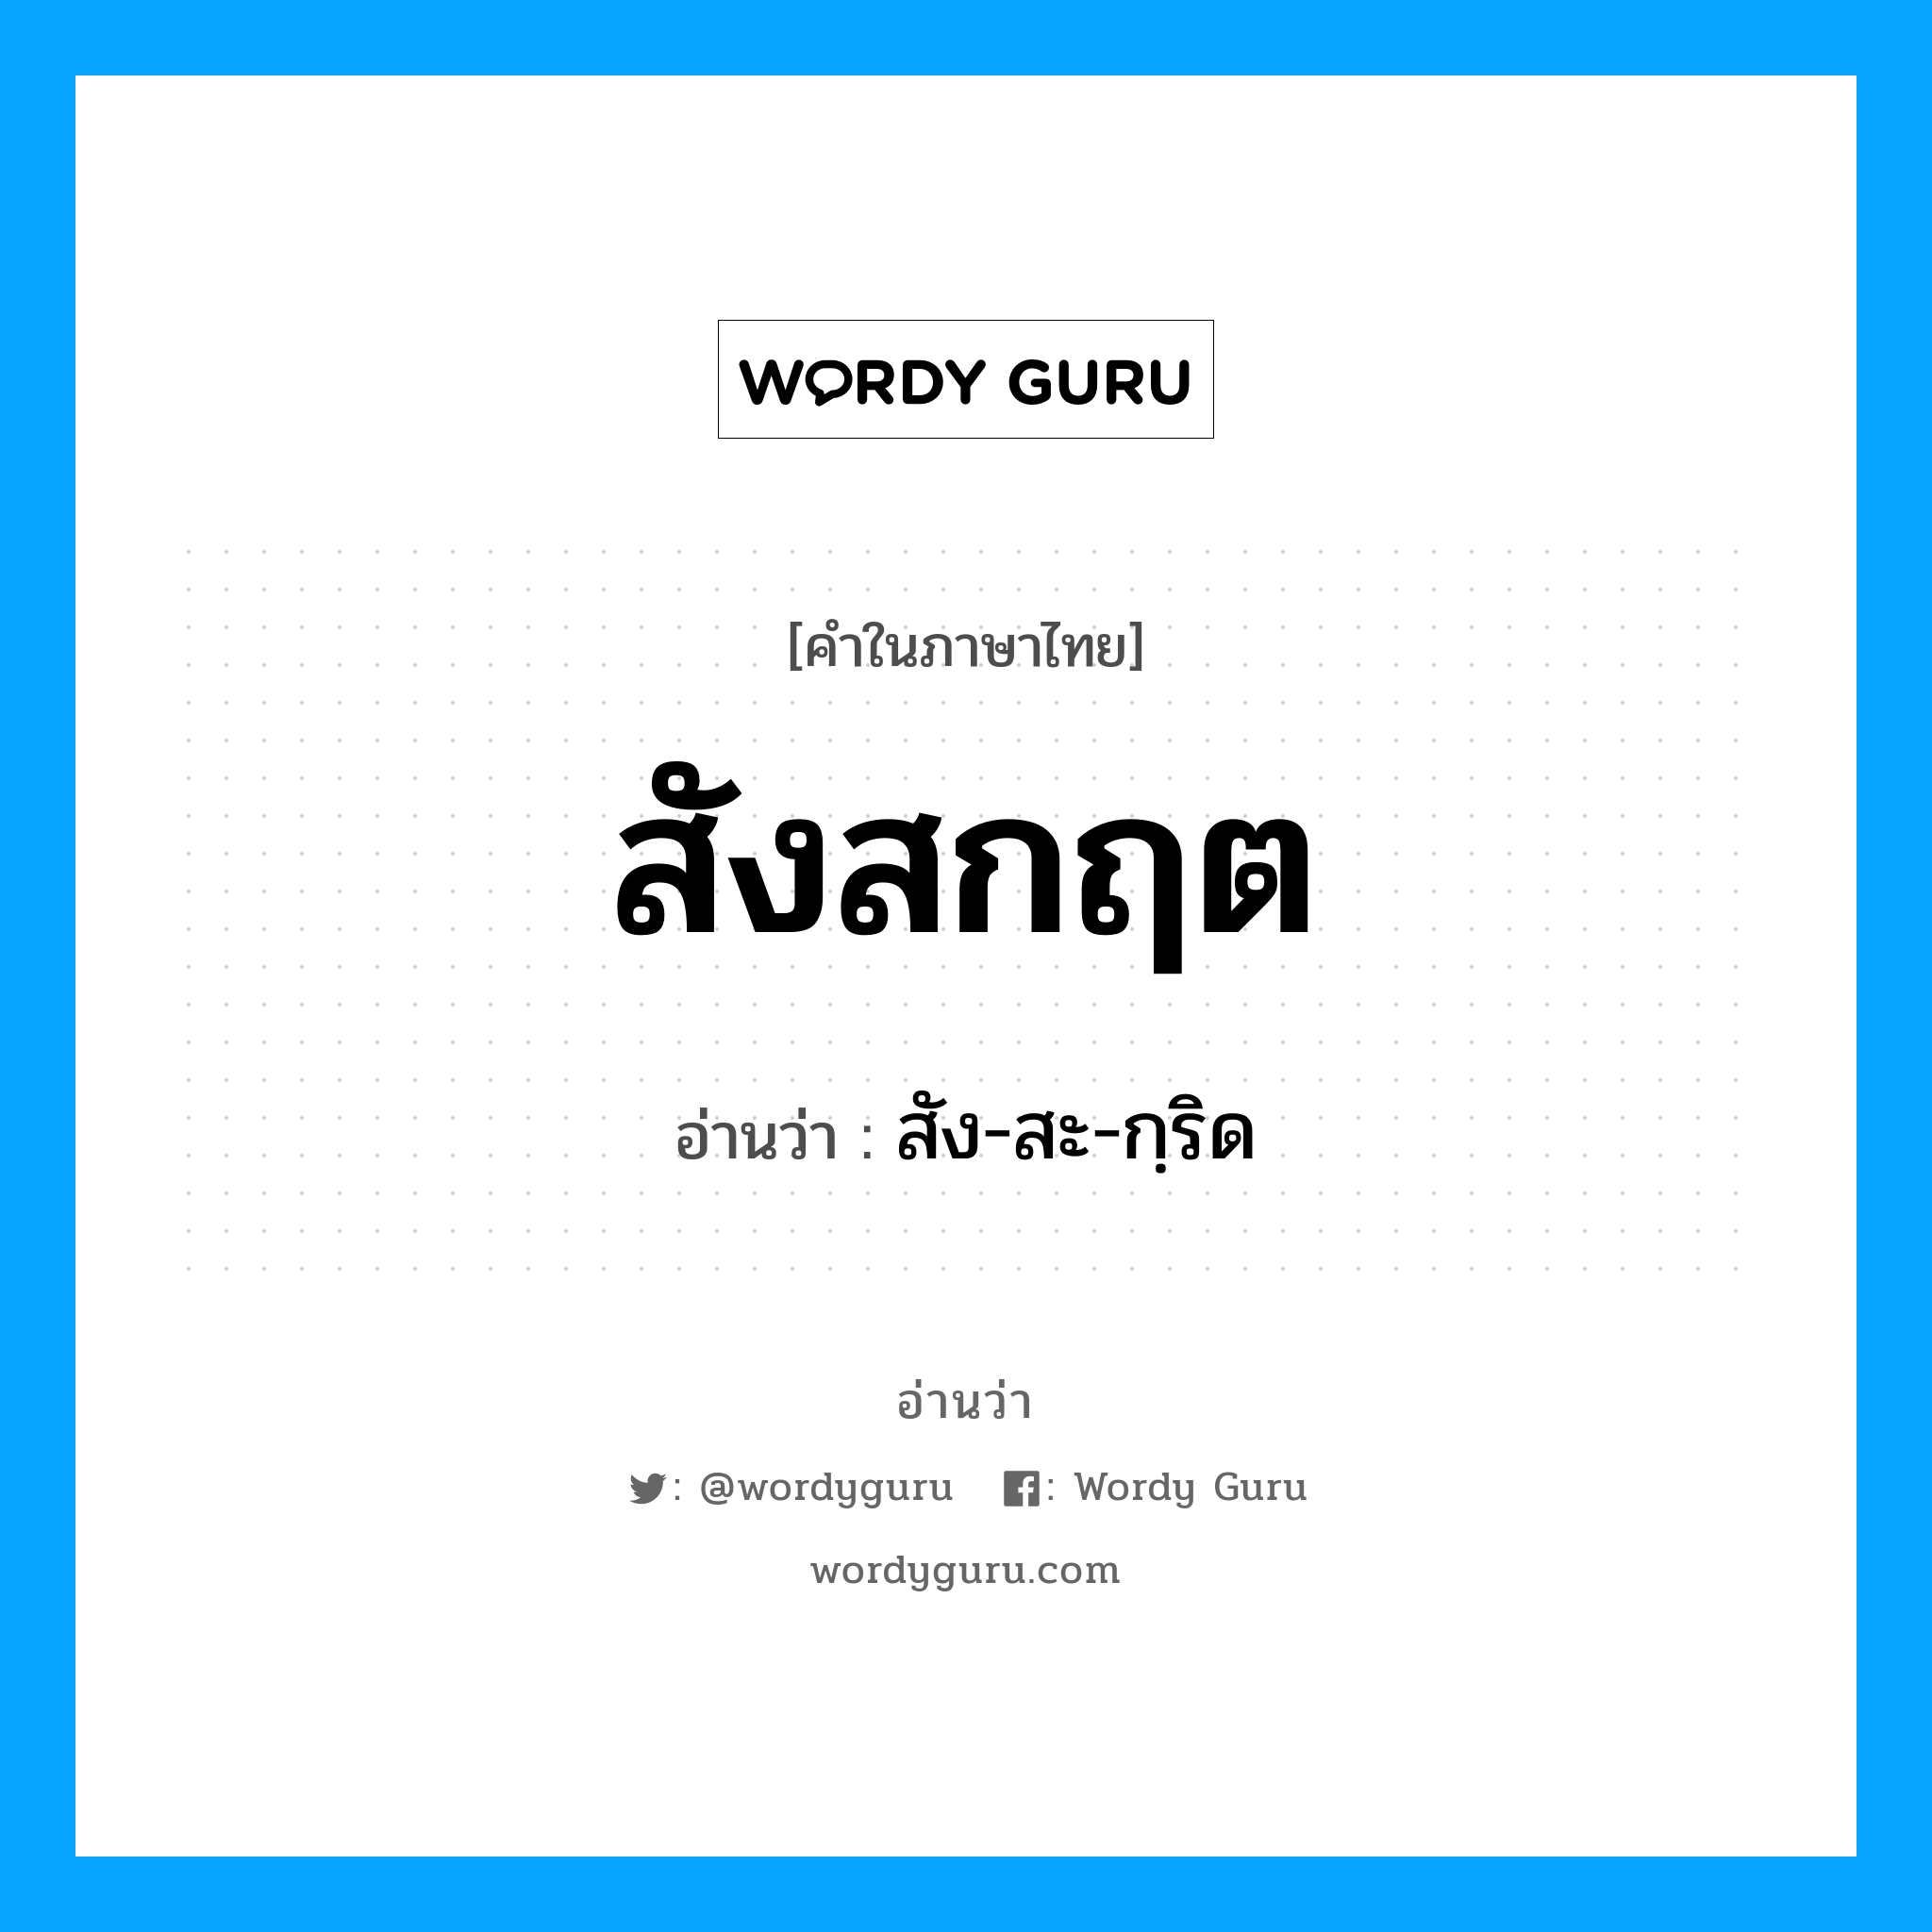 สัง-สะ-กฺริด เป็นคำอ่านของคำไหน?, คำในภาษาไทย สัง-สะ-กฺริด อ่านว่า สังสกฤต